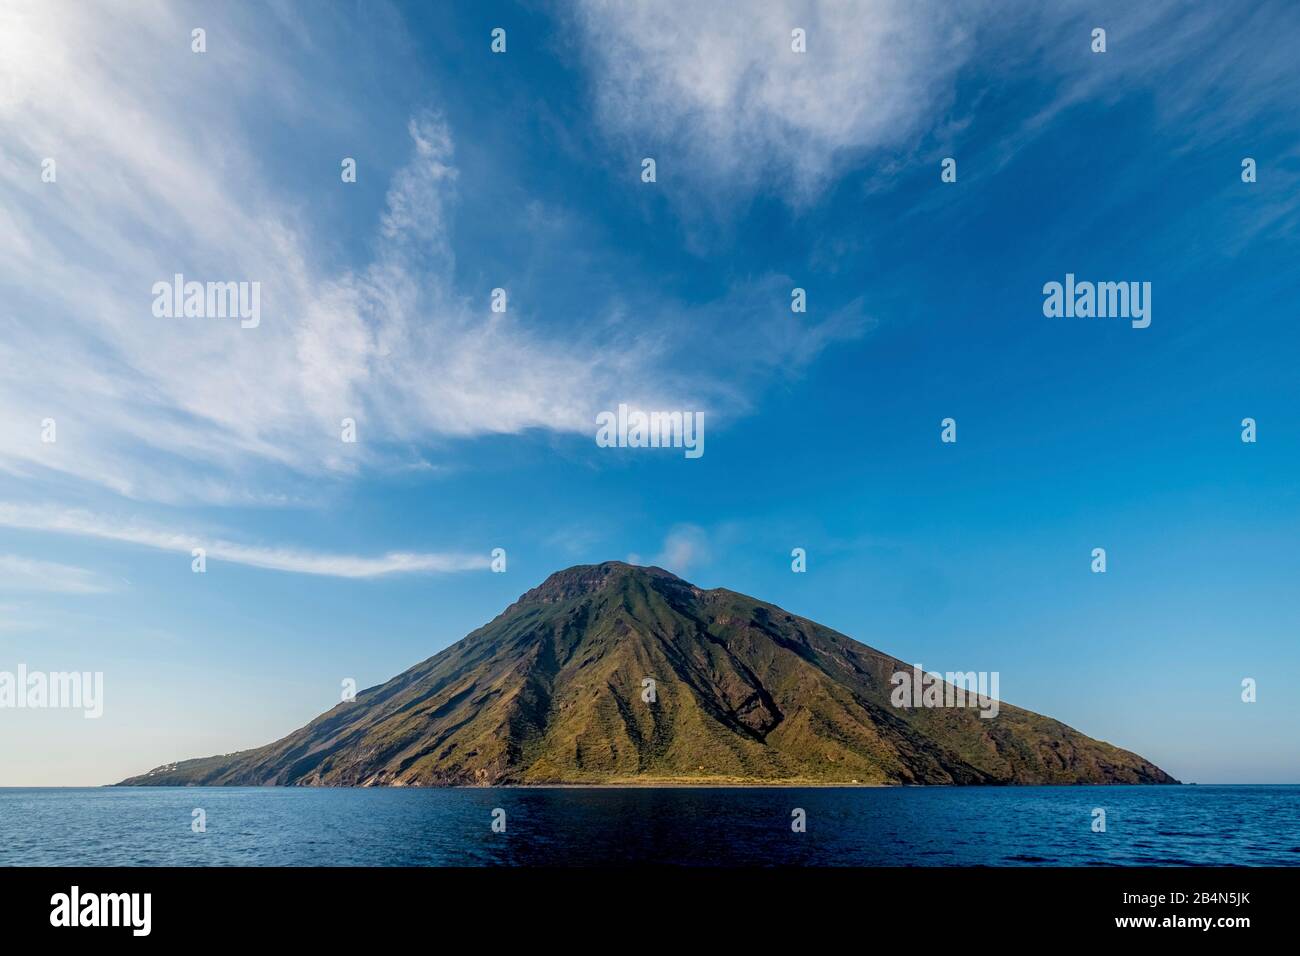 Vulkan Stromboli mit Wolkenbildung, Ginostra, Äolische Inseln, Äolische Inseln, Tyrrhenisches Meer, Süditalien, Europa, Sizilien, Italien Stockfoto